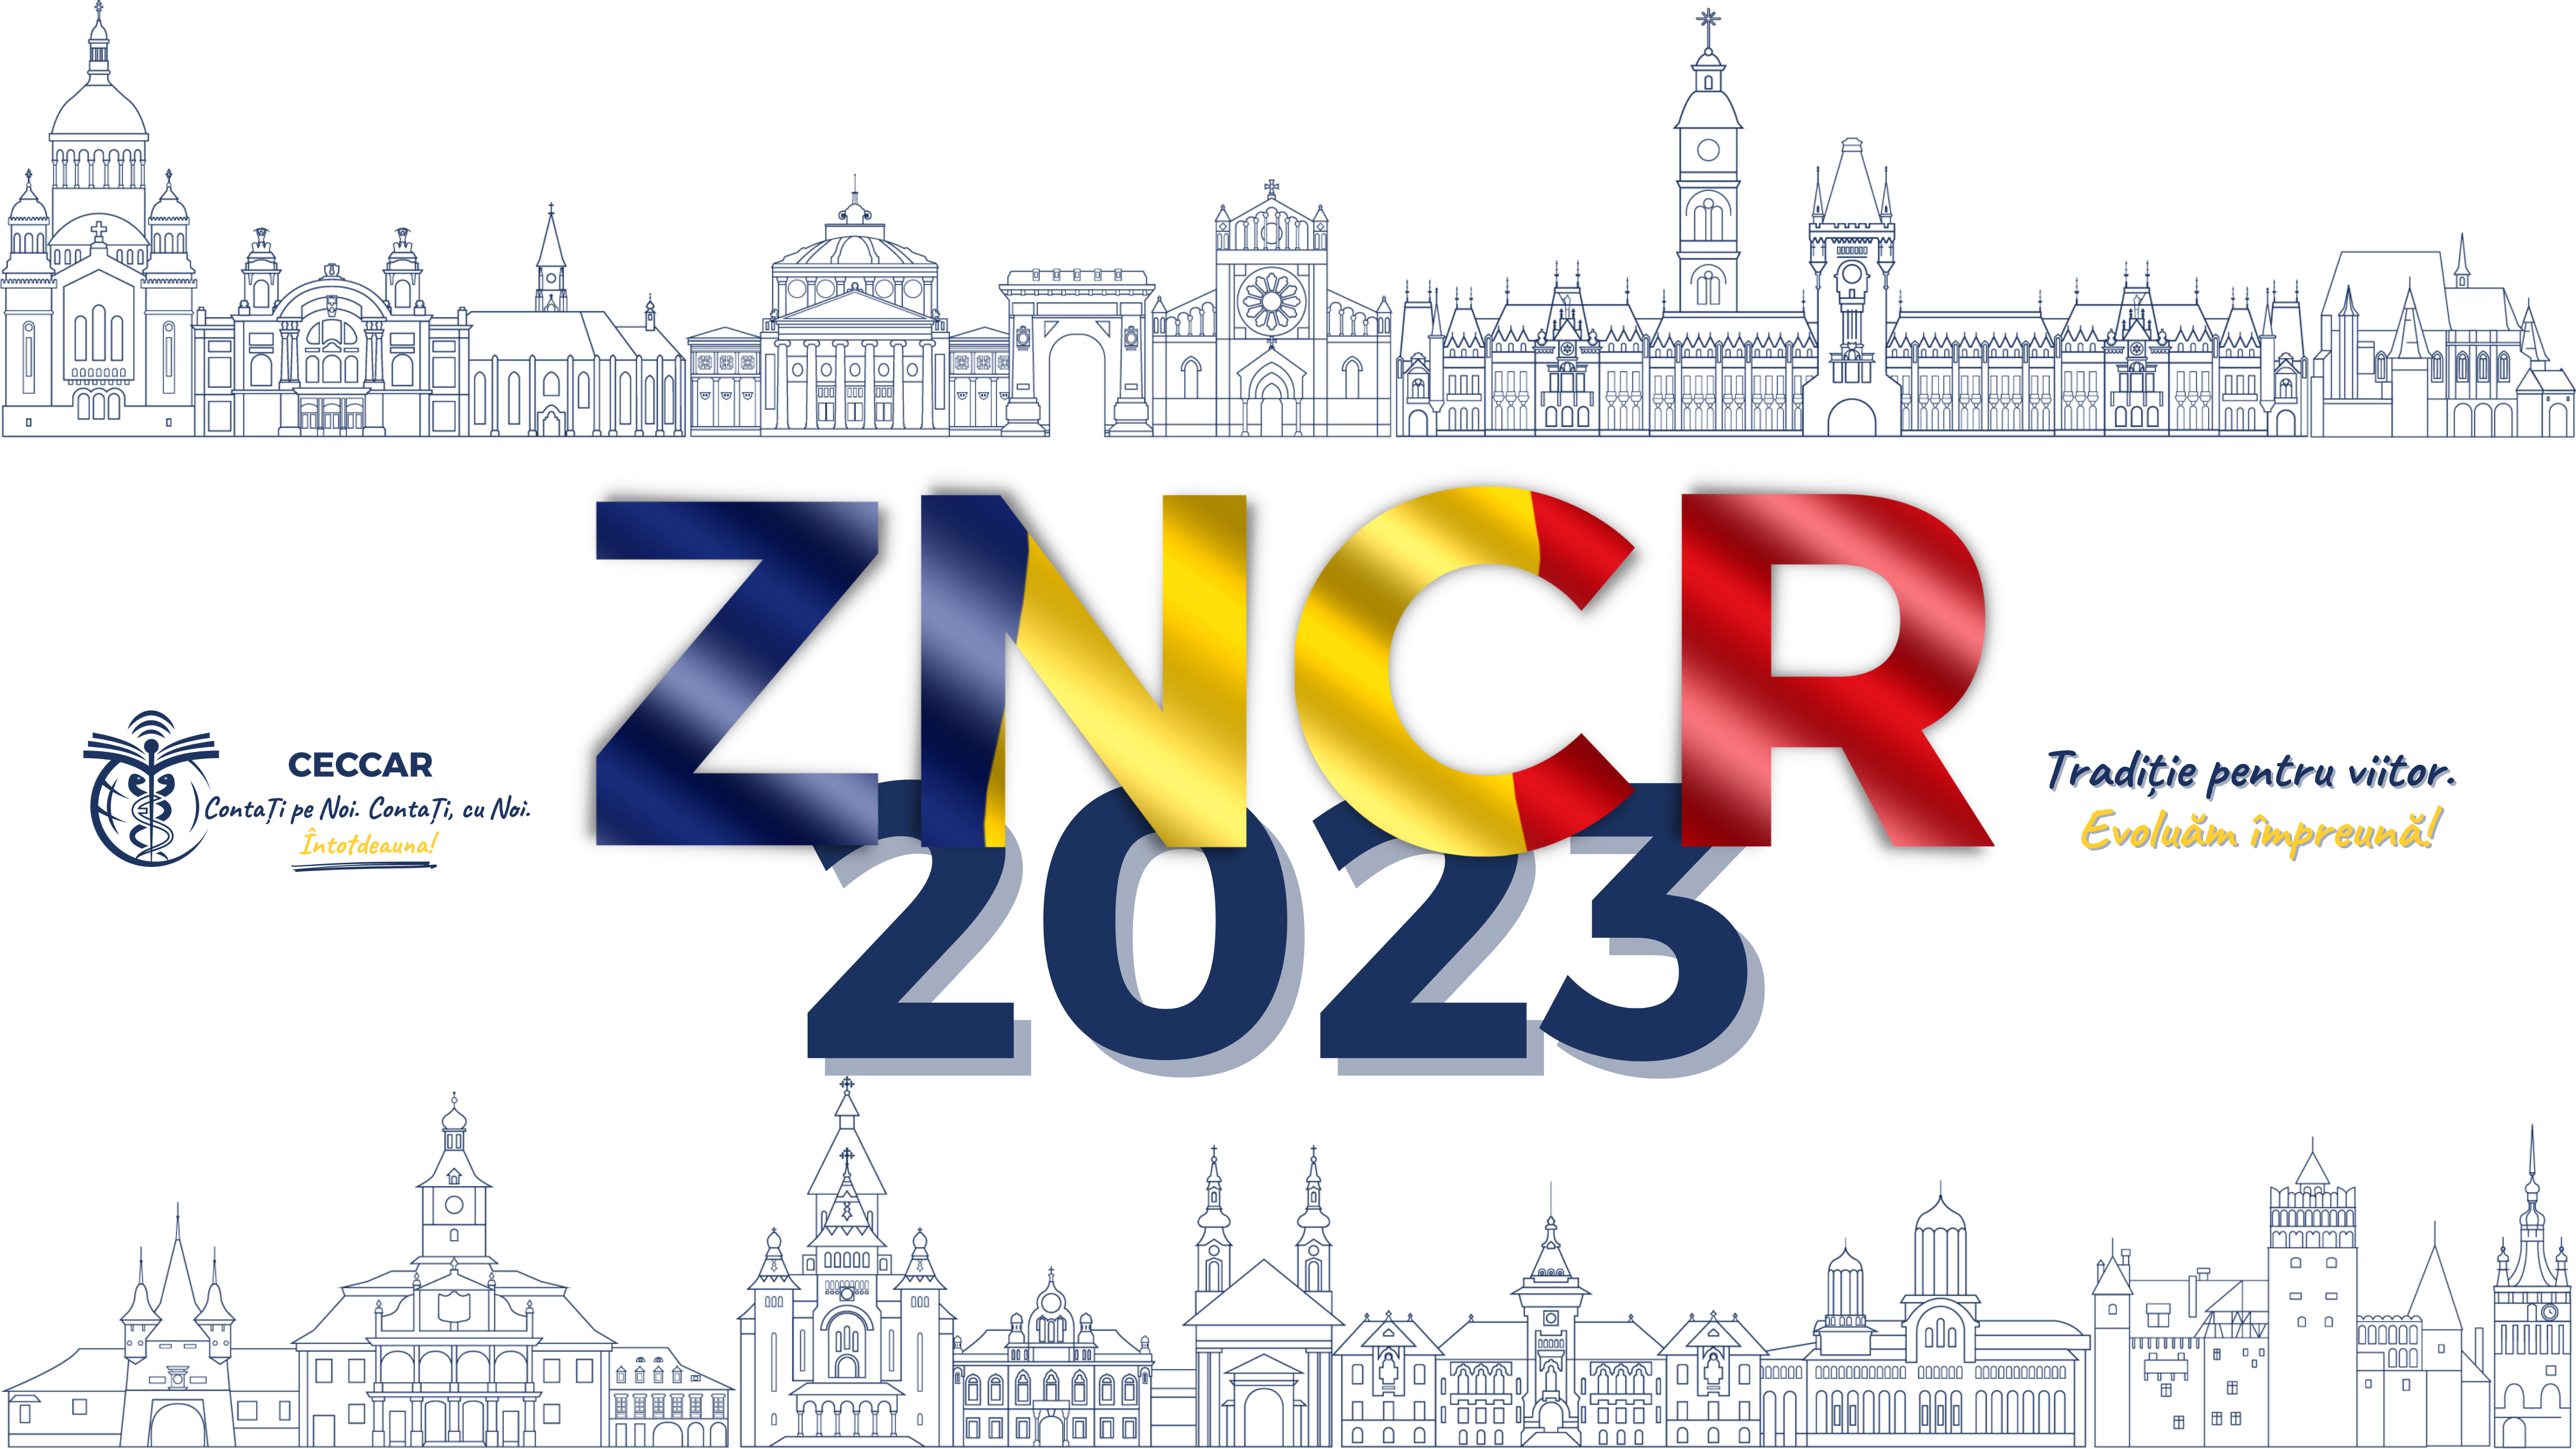 Grafica ZNCR 2023 full resolution